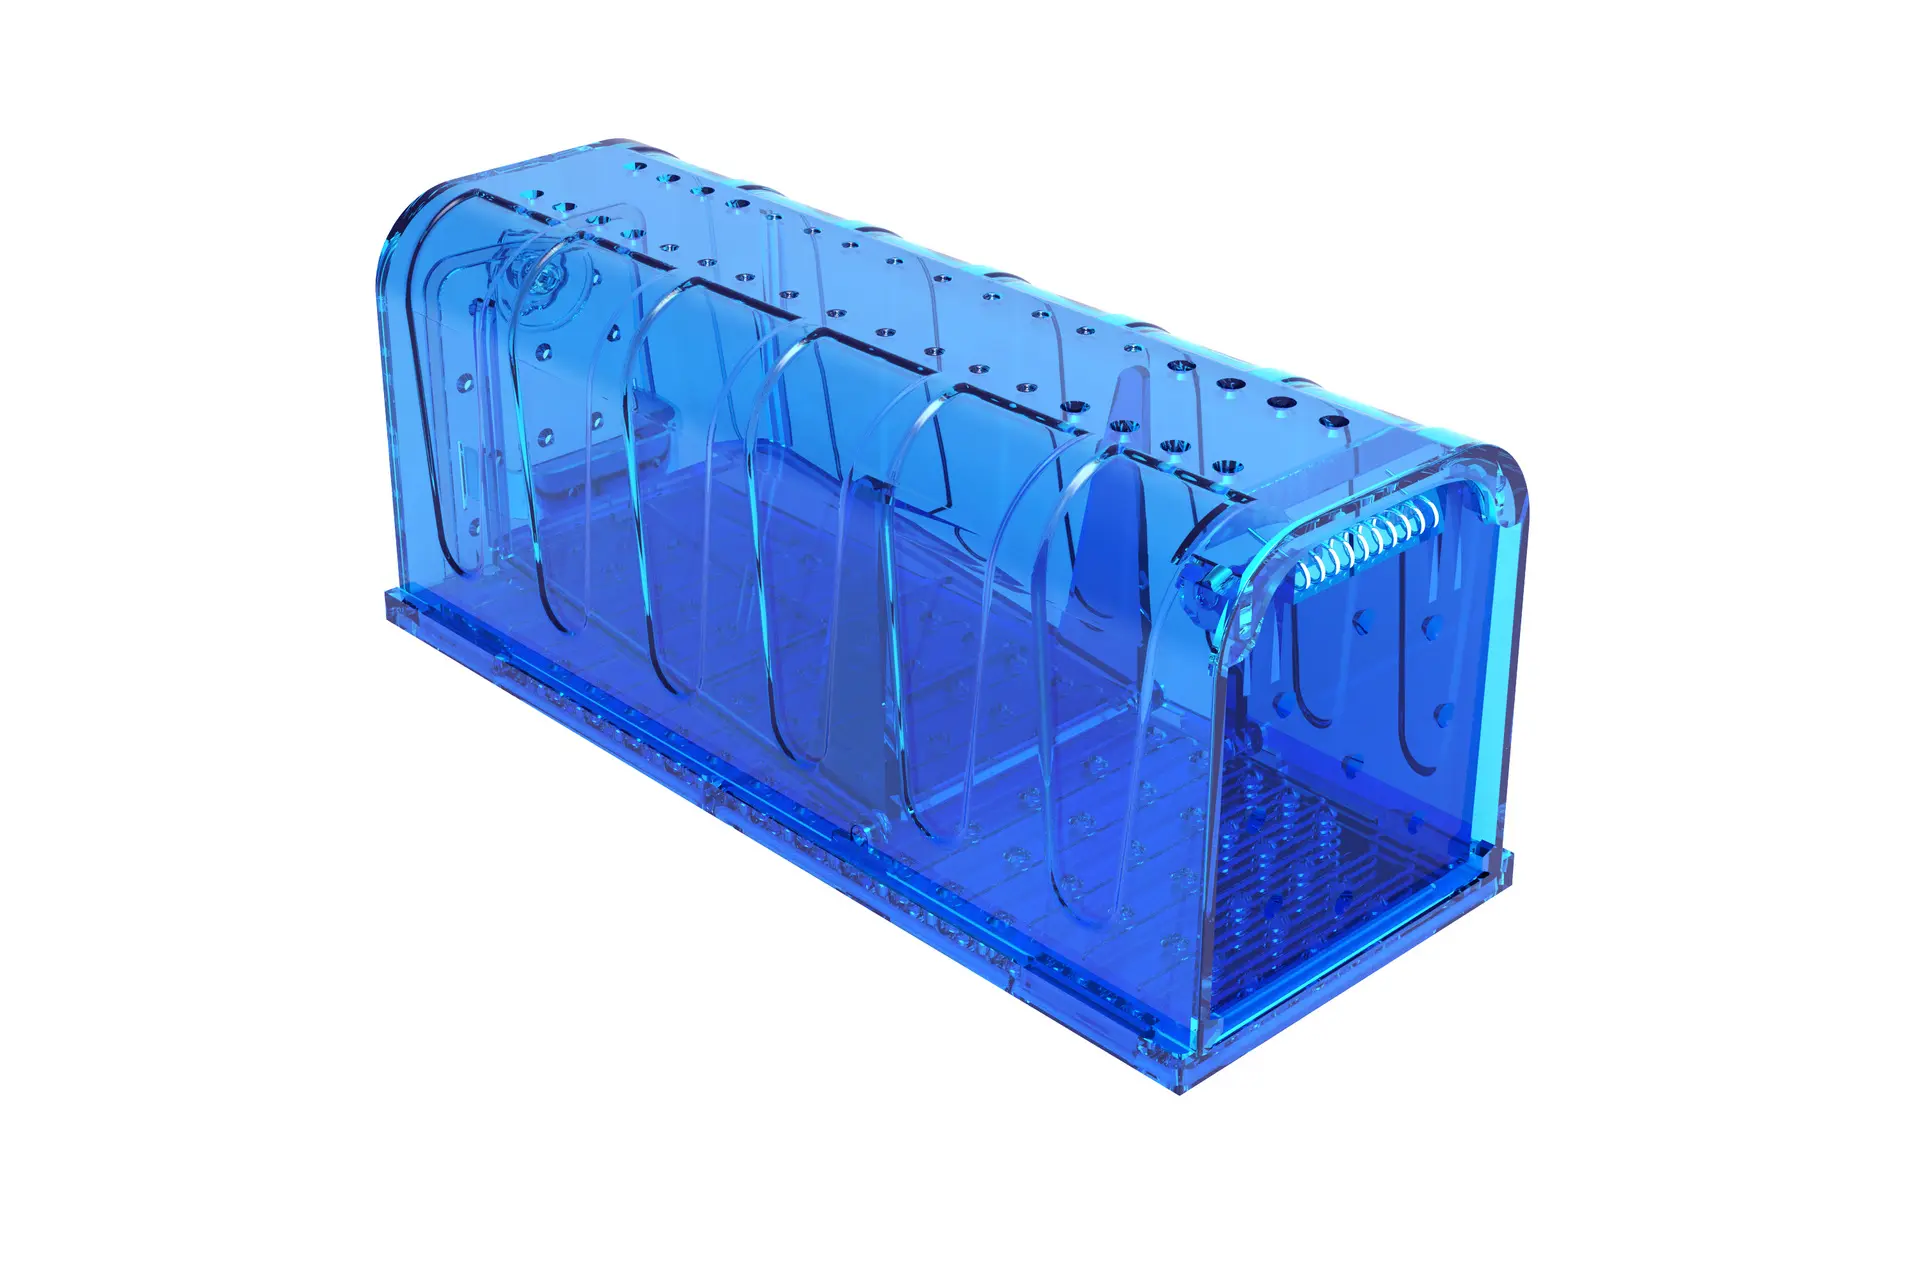 安全なヒューマンキャッチボックスプラスチック再利用可能なライブキャッチスマートトンネルトラップラット齧歯動物ホームマウストラッププラスチックヒューマンマウストラップ